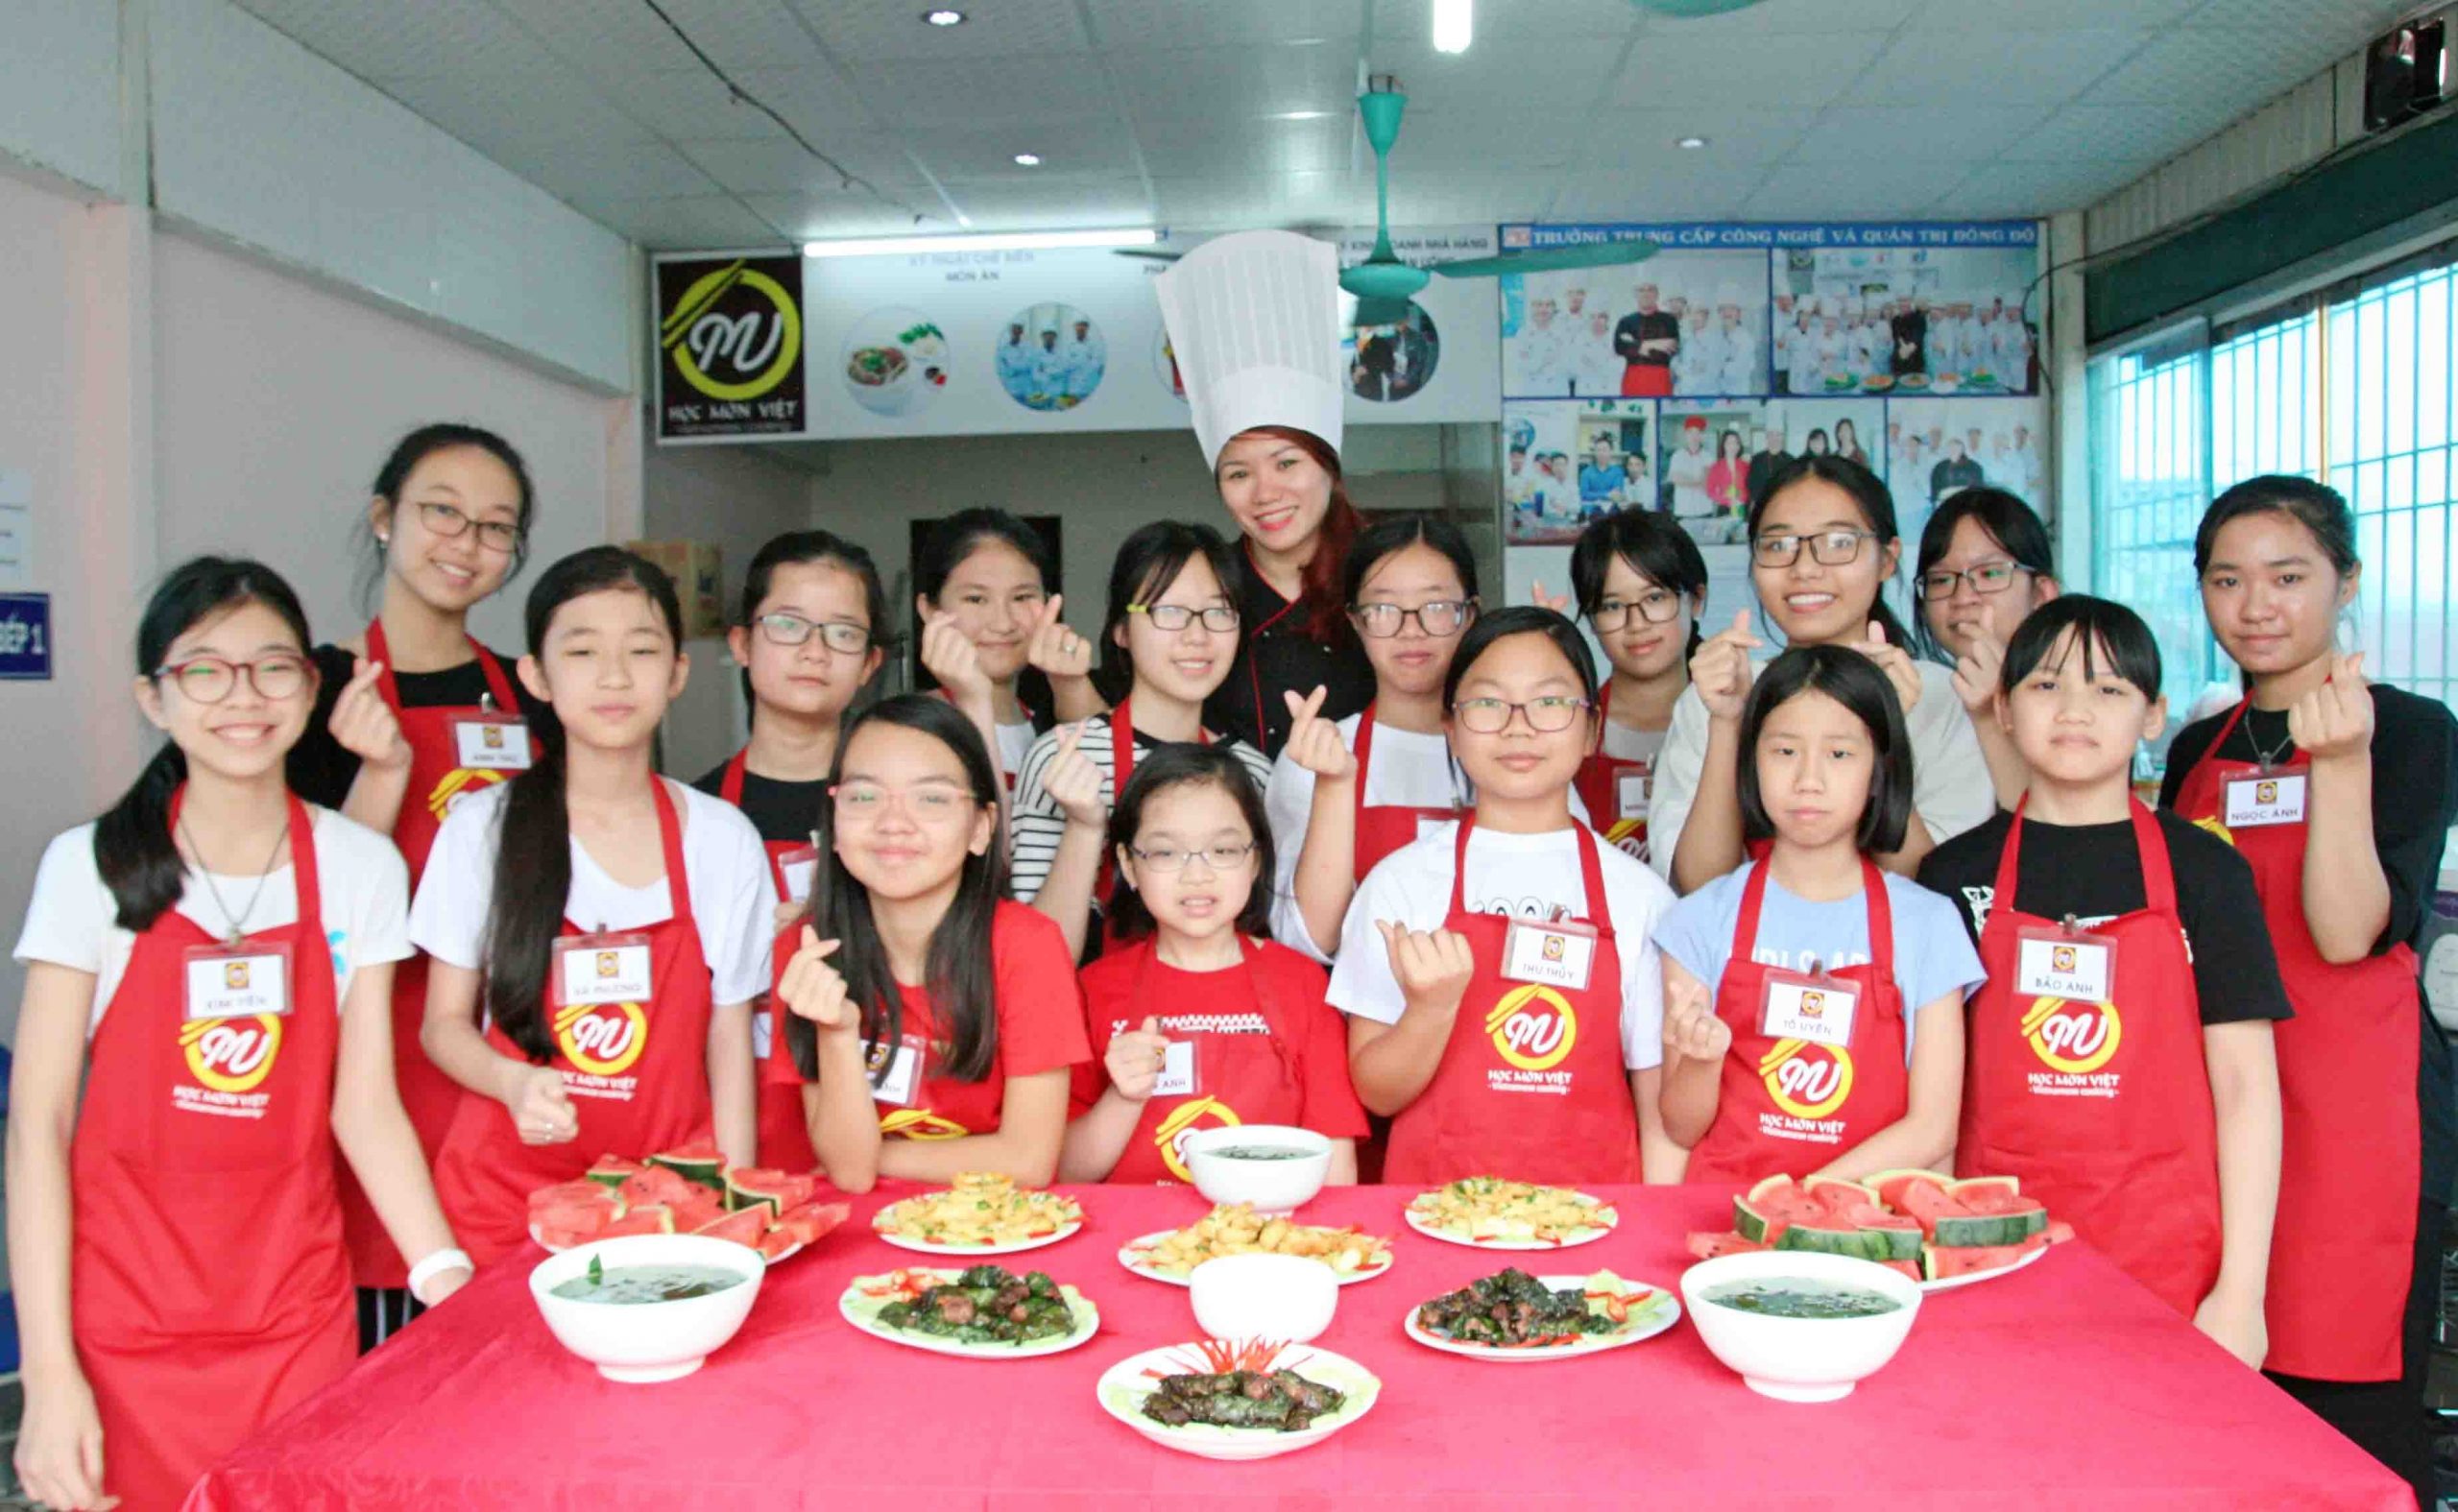 Lớp dạy nấu ăn cho trẻ em ở Hà Nội